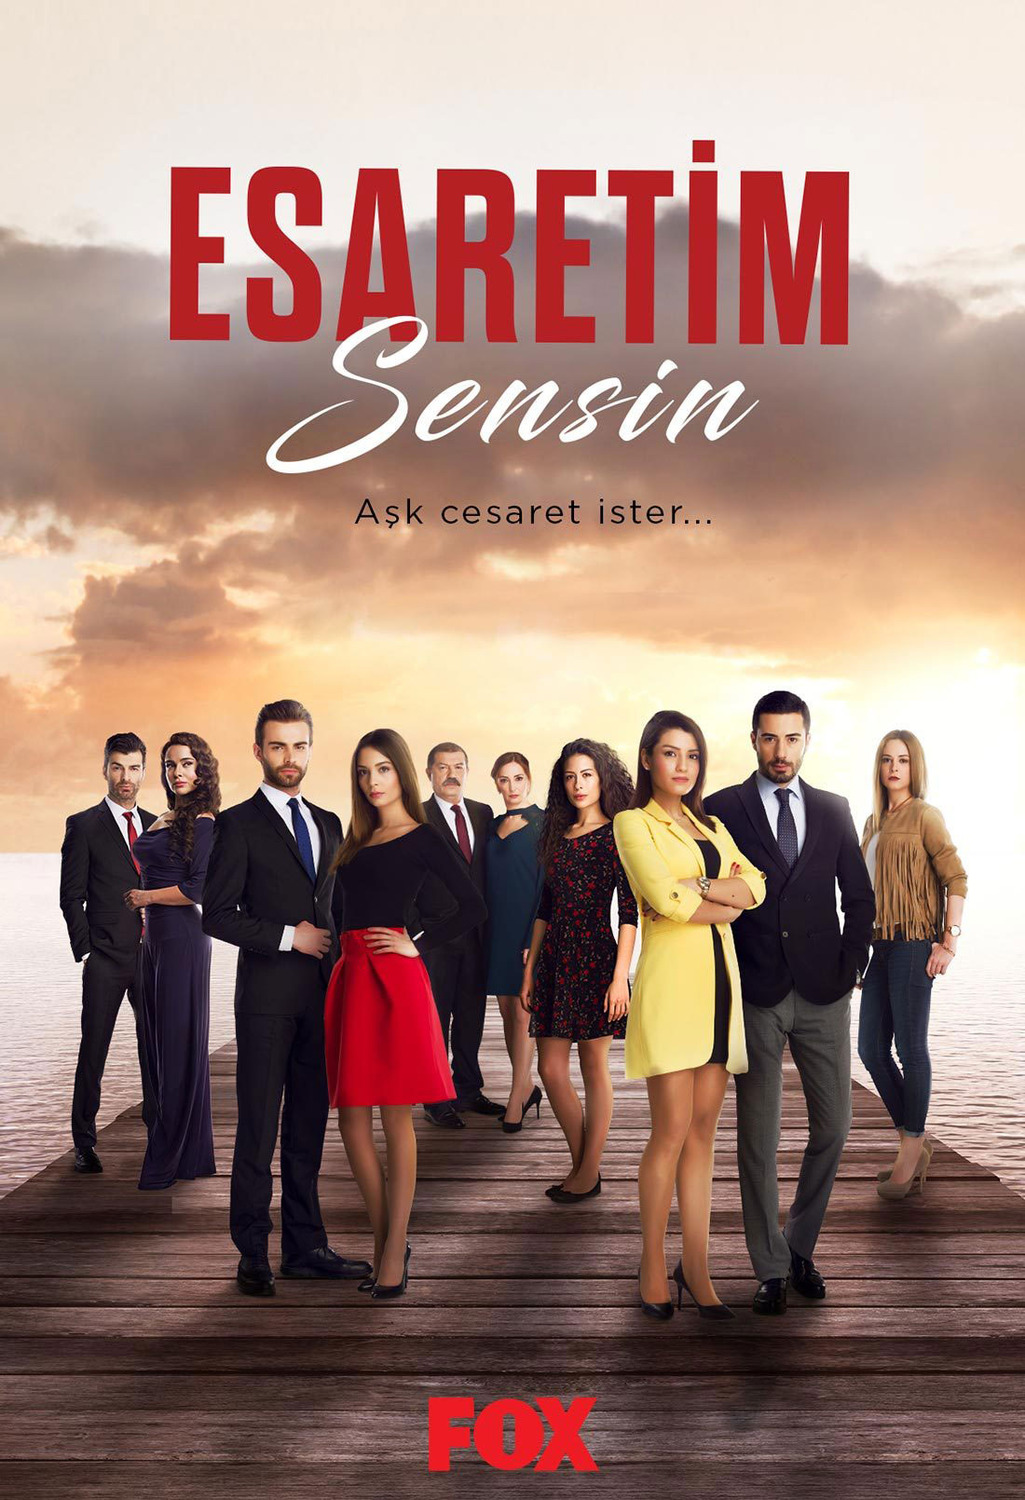 Extra Large TV Poster Image for Esaretim Sensin 